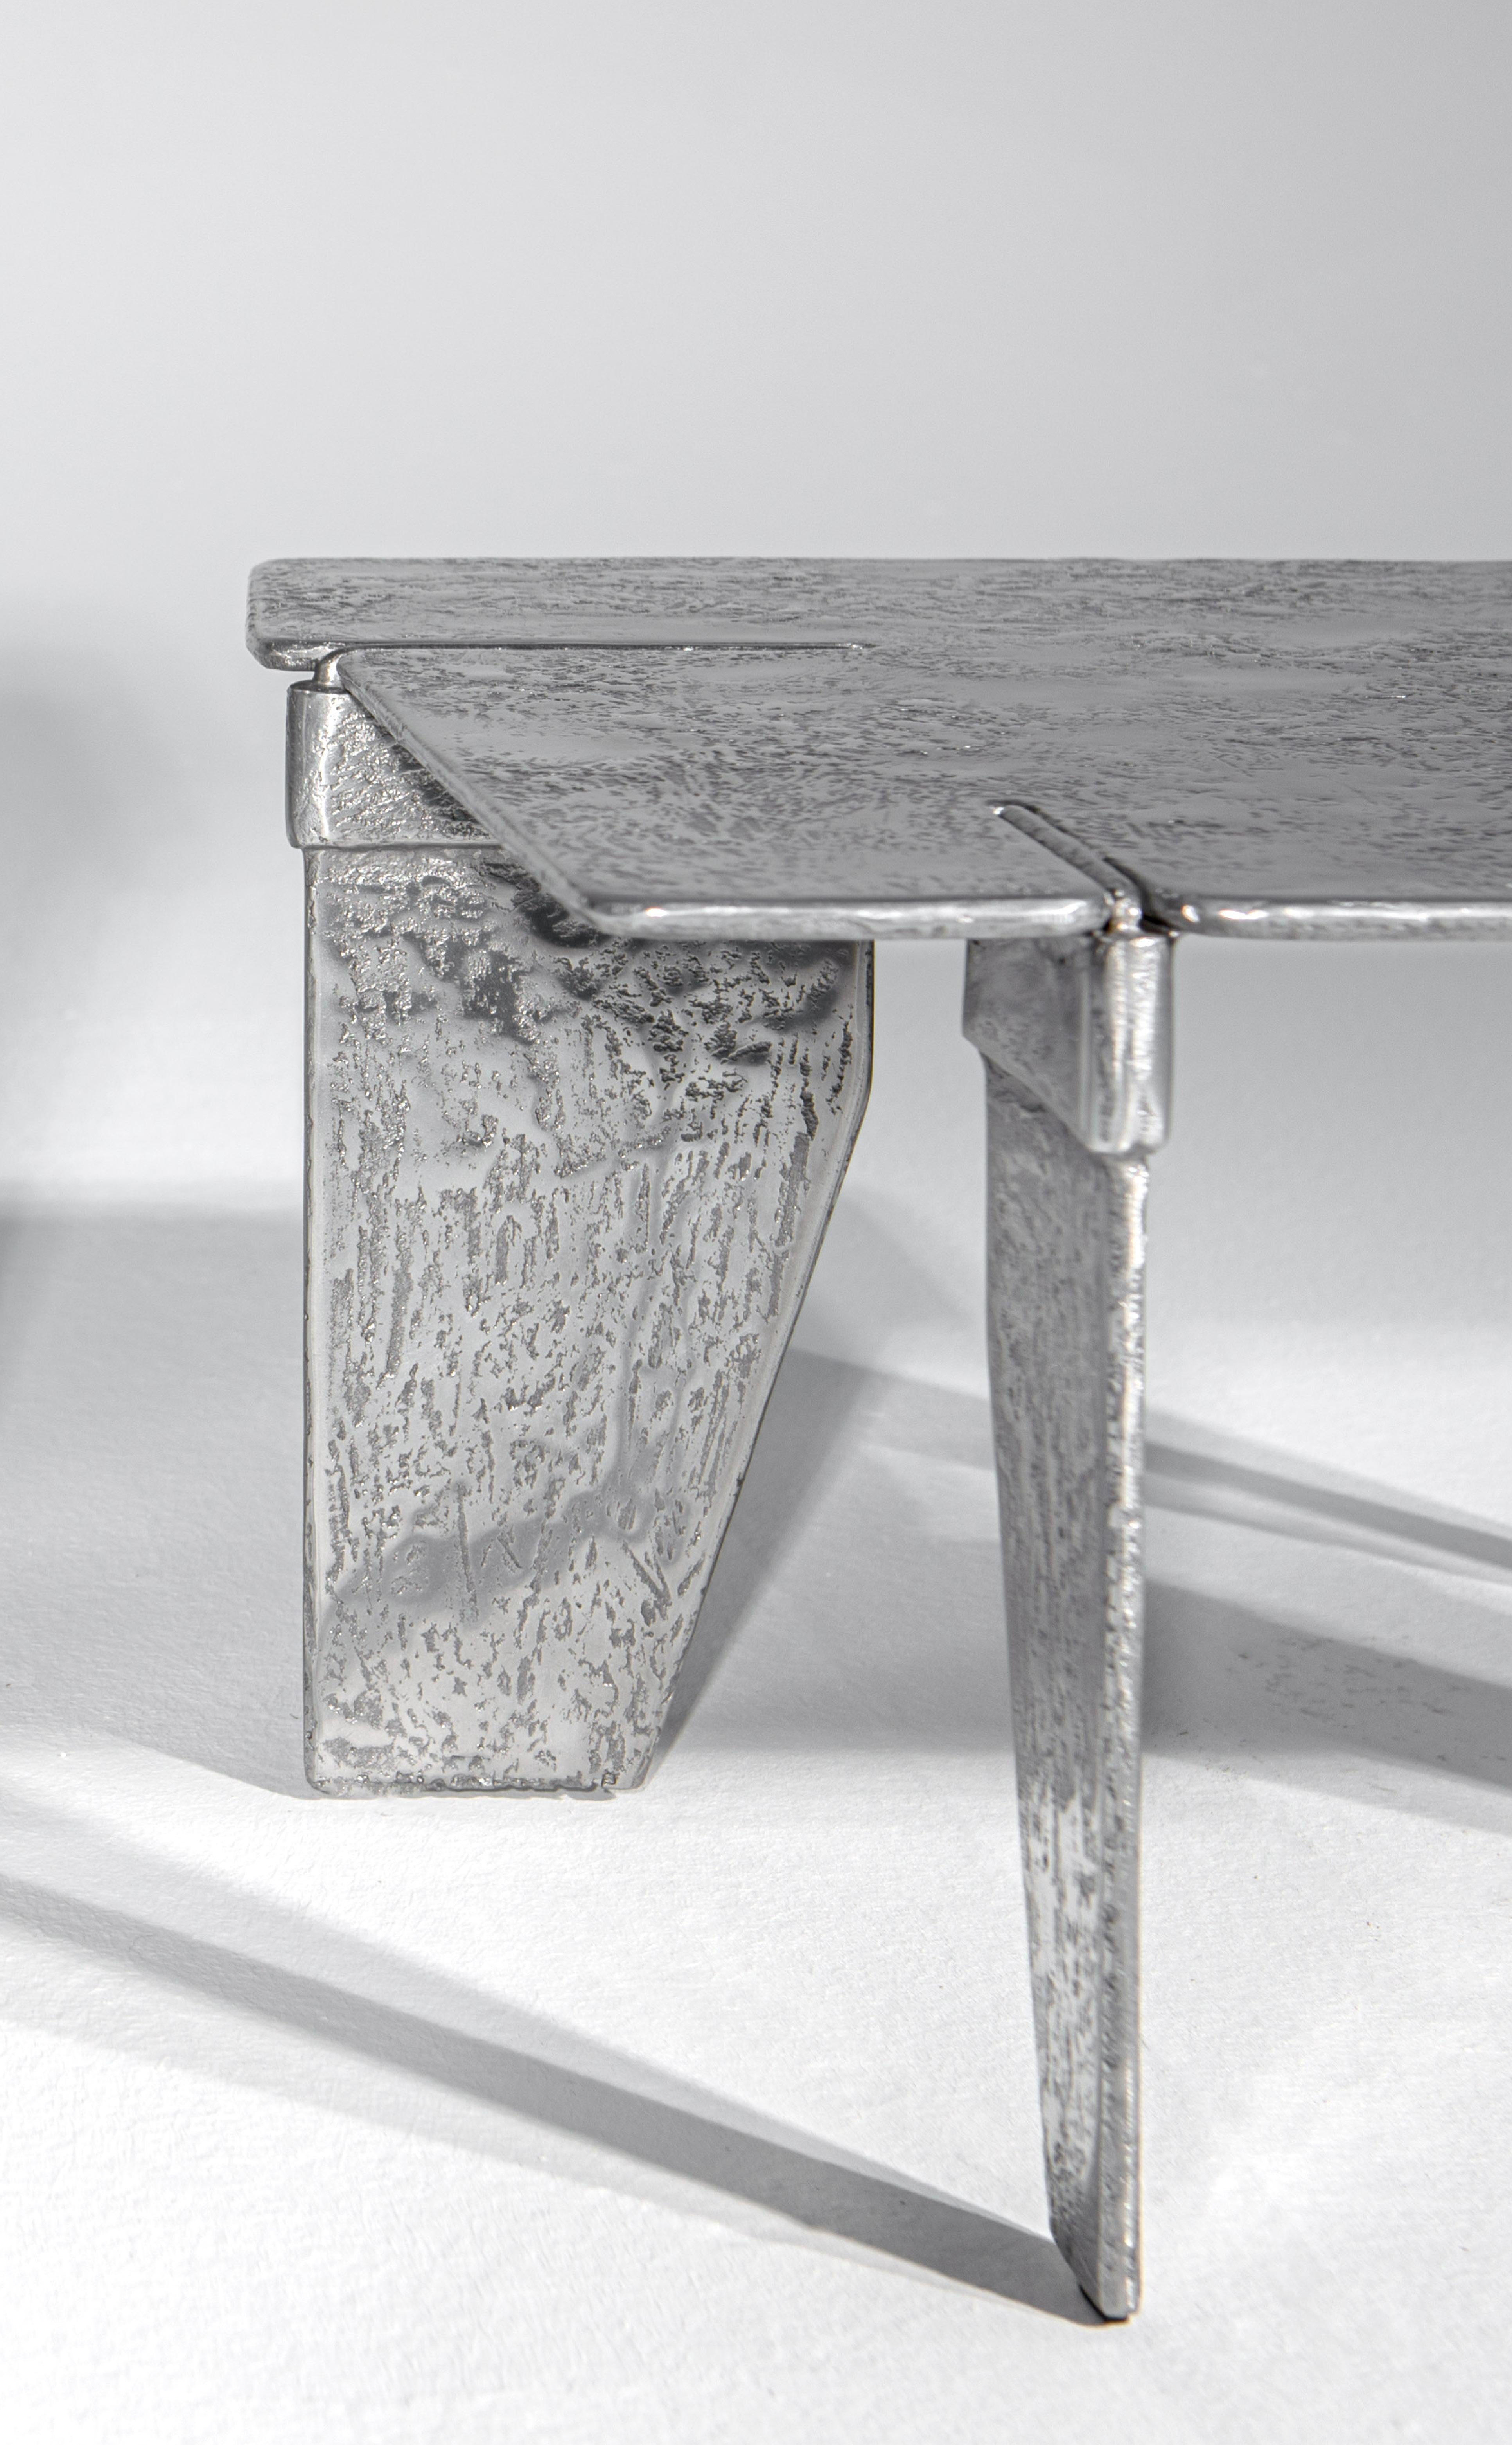 La table basse Overlap est entièrement fabriquée en aluminium. Il est obtenu en coulant l'aluminium dans des moules spéciaux en sable. L'aspect sculptural de la surface et l'utilisation du métal comme matière première font de cet article une œuvre